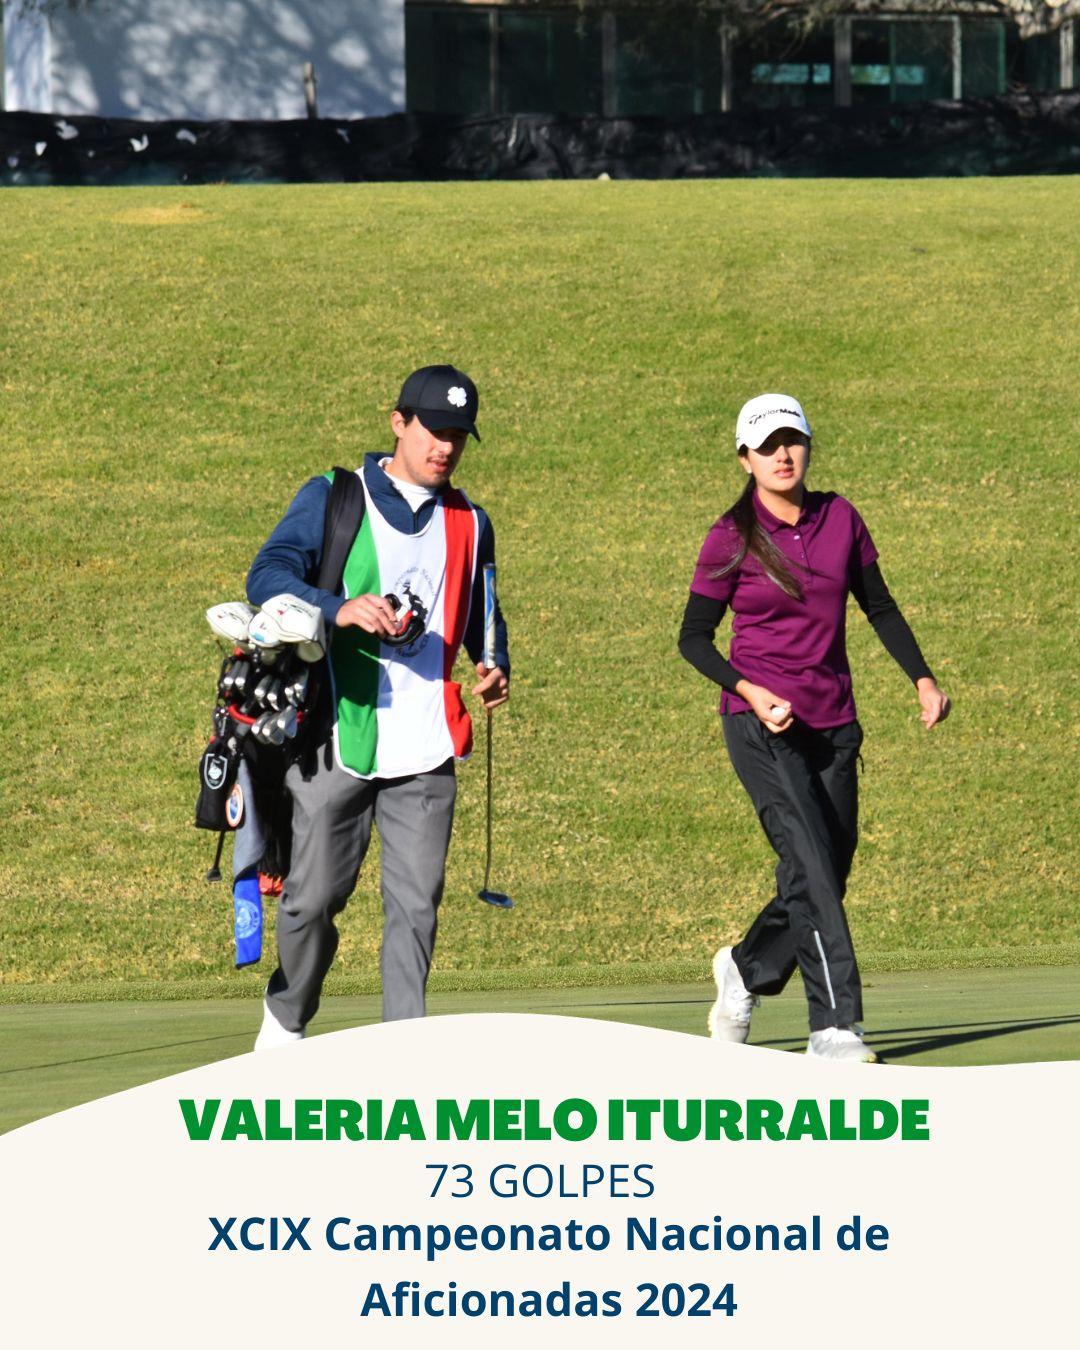 Valeria Melo Iturralde